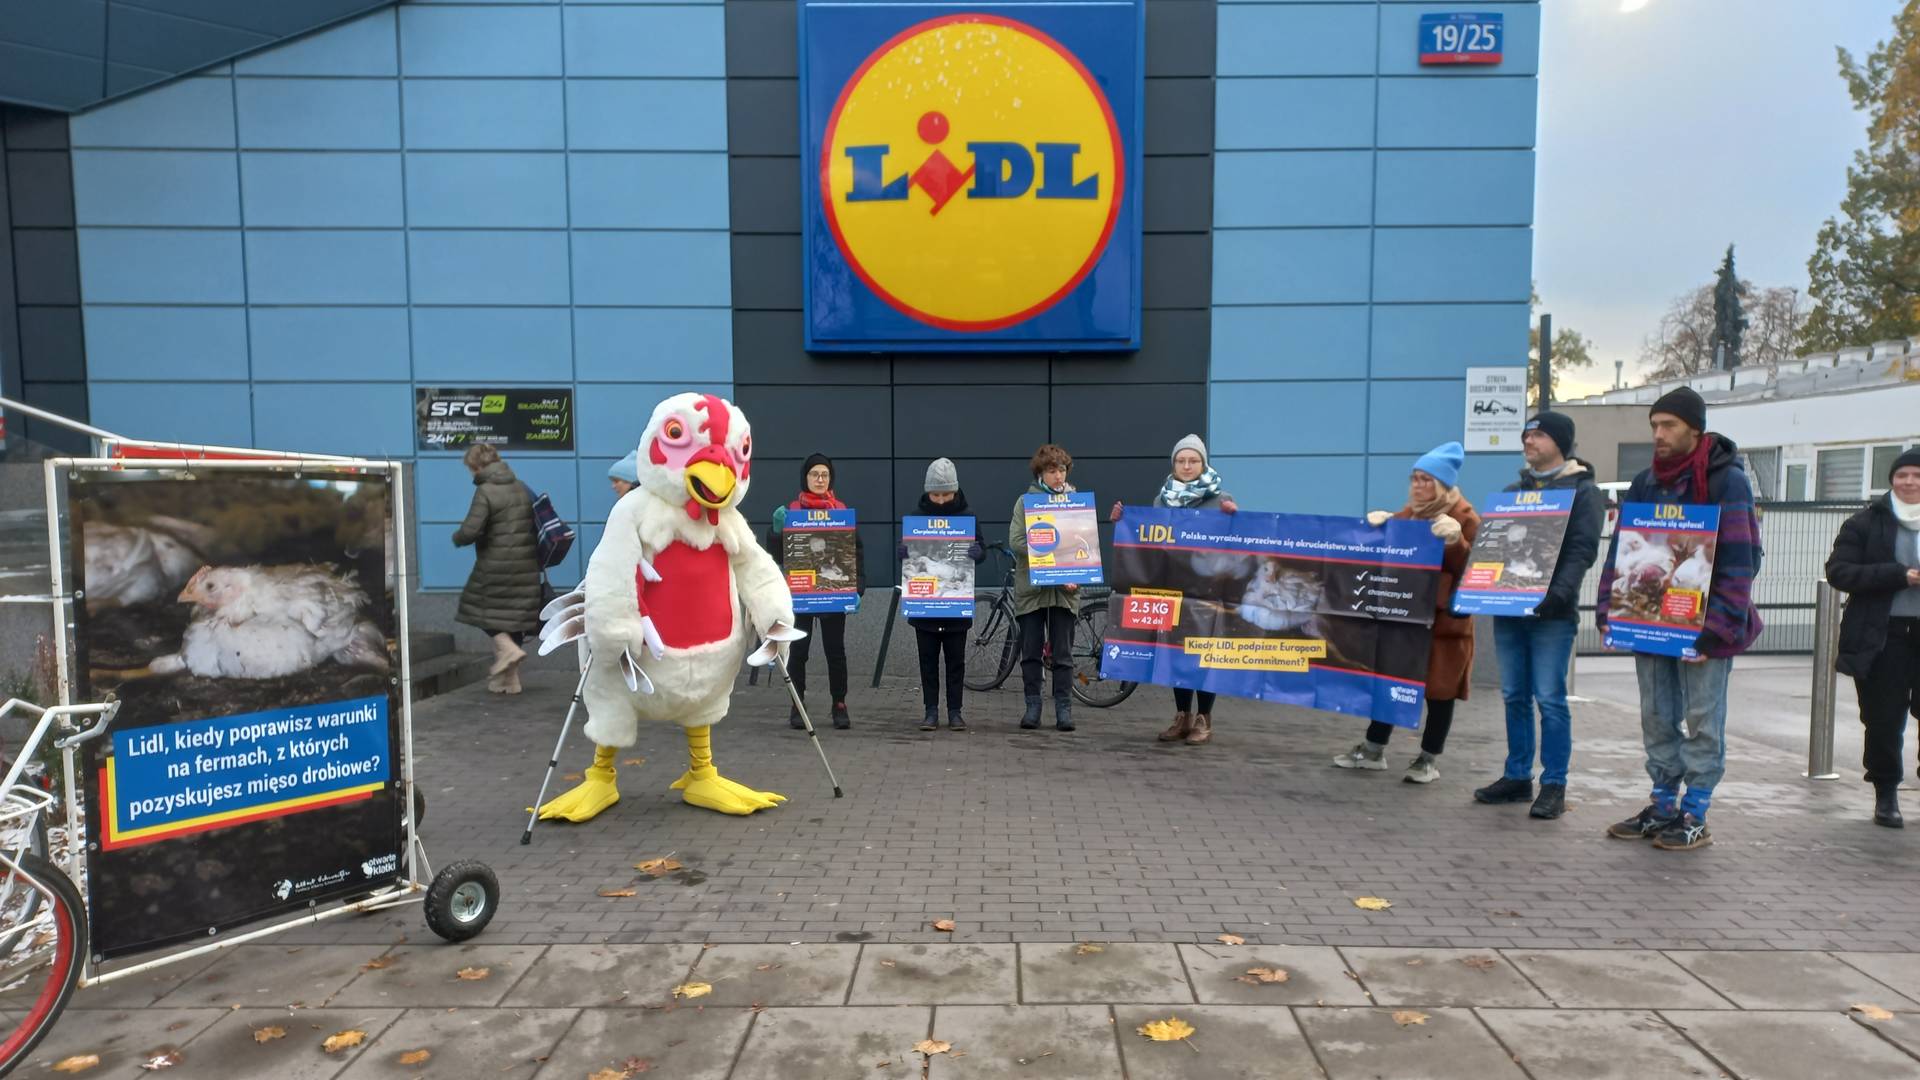 Strajki przed sklepami Lidl w Polsce. Otwarte Klatki uświadamiają klientów